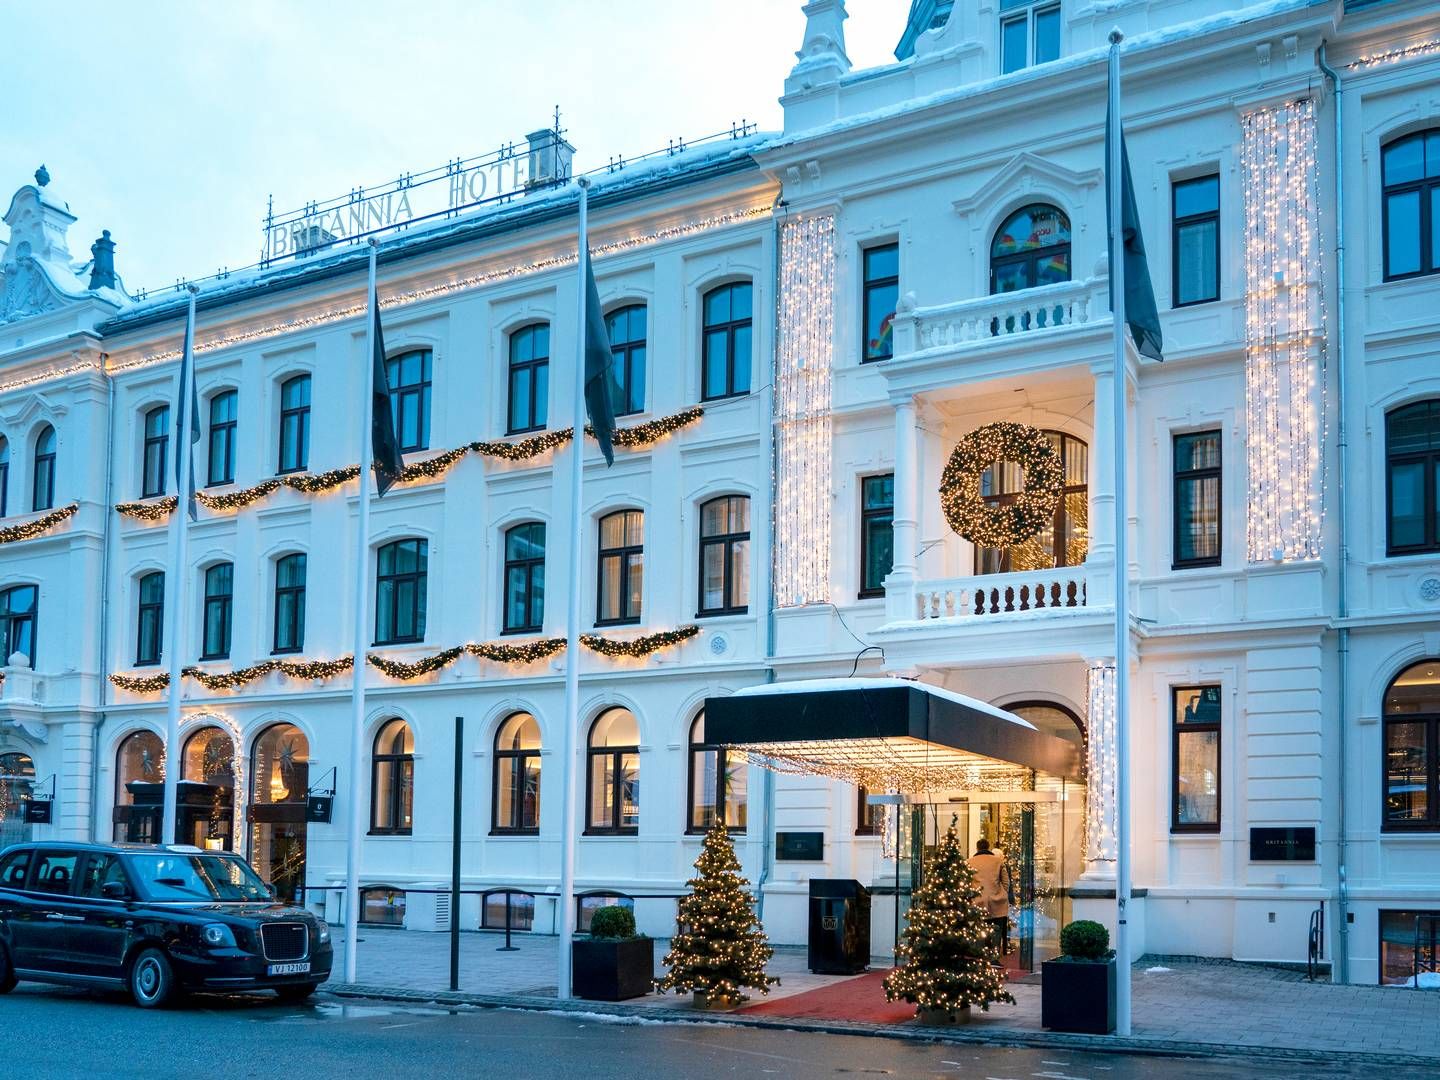 NEDGANG: Trondheims hotellbransje, her representert av Hotell Britannia, hadde en samlet nedgang på belegget på 16 prosent i januar i år, sammenlignet med 202. | Foto: Gorm Kallestad / NTB